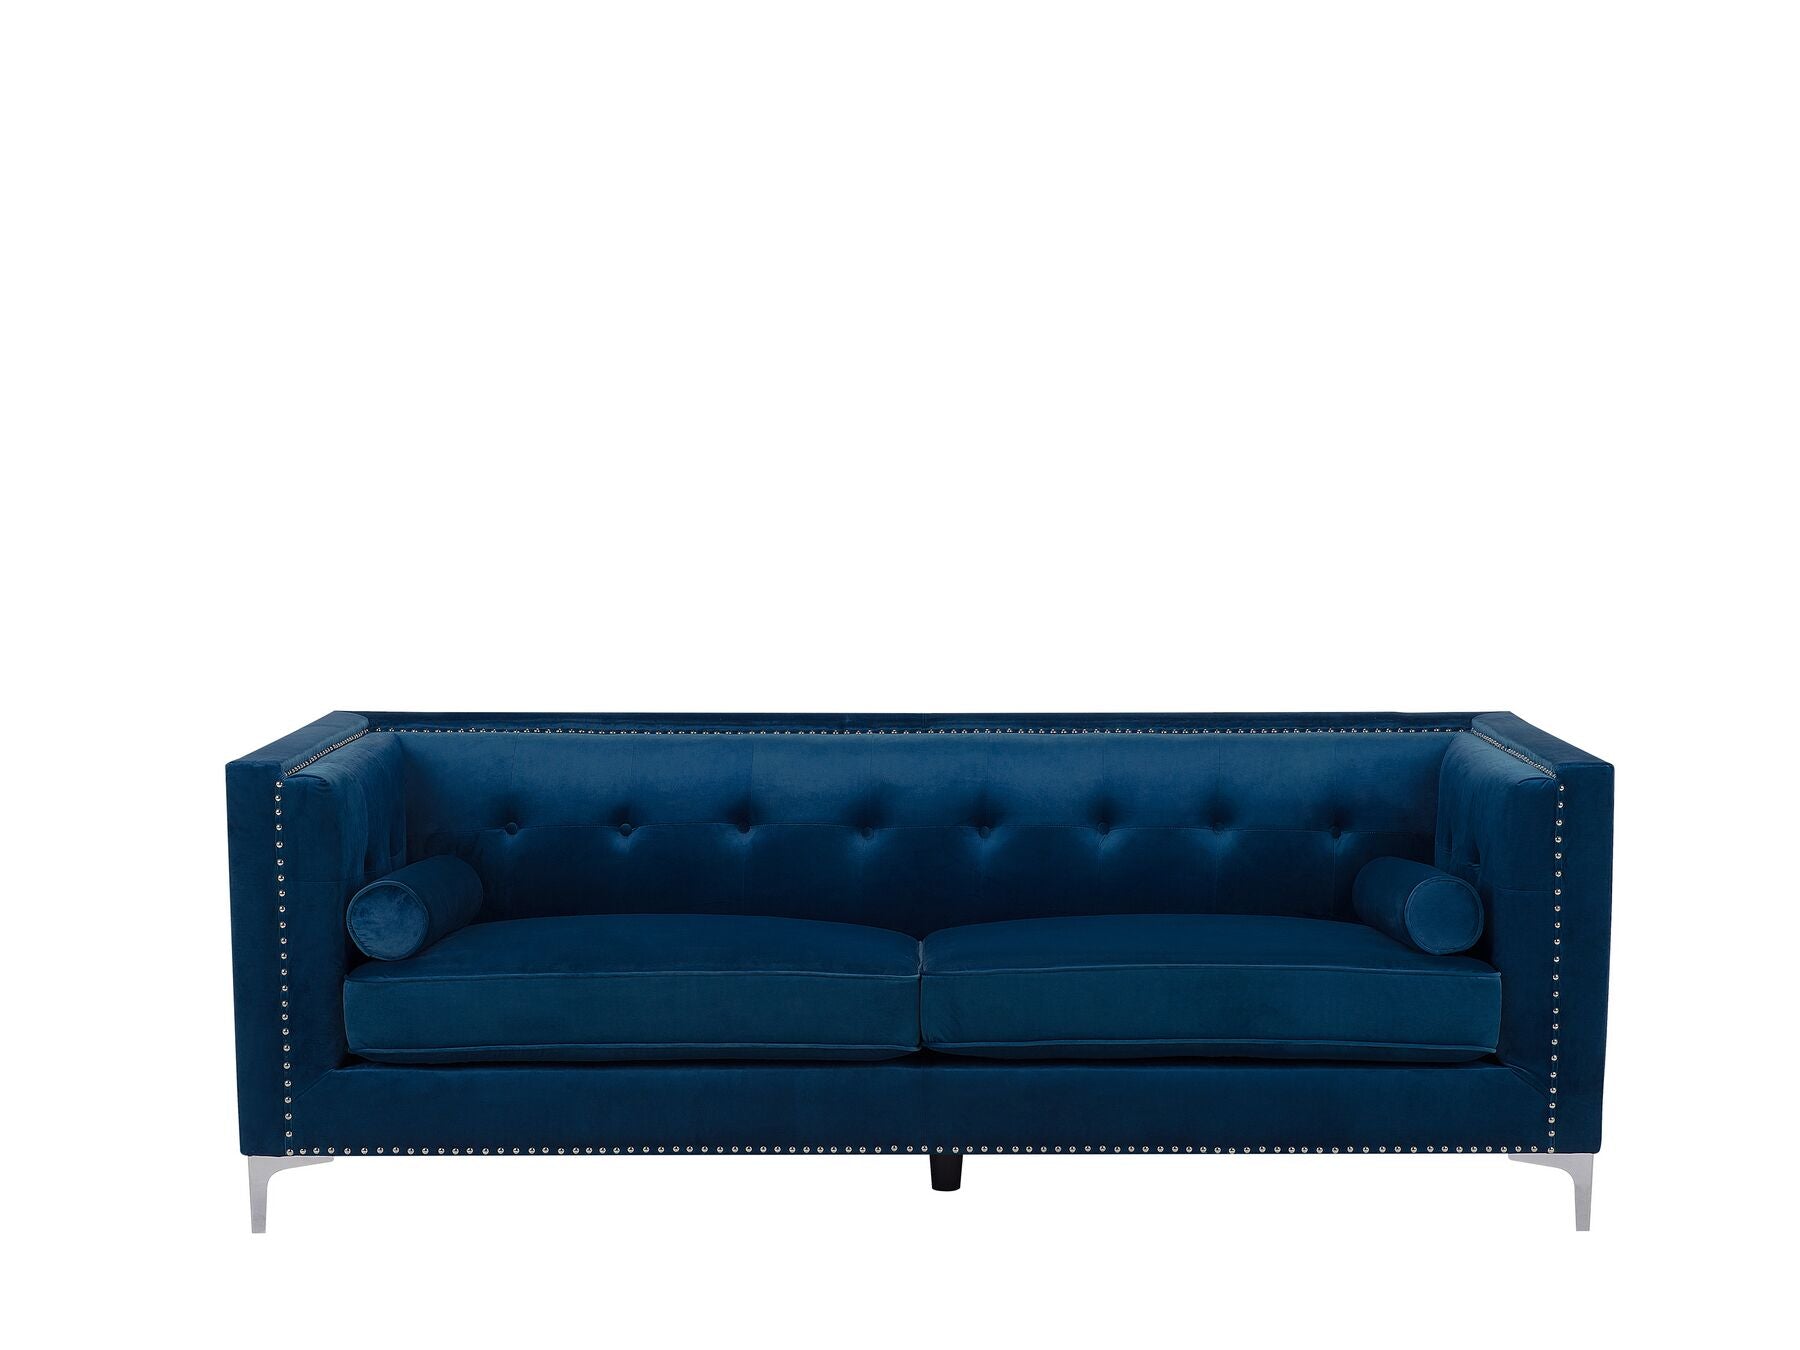 Avaldenses 3 Seater Velvet Sofa Navy Blue